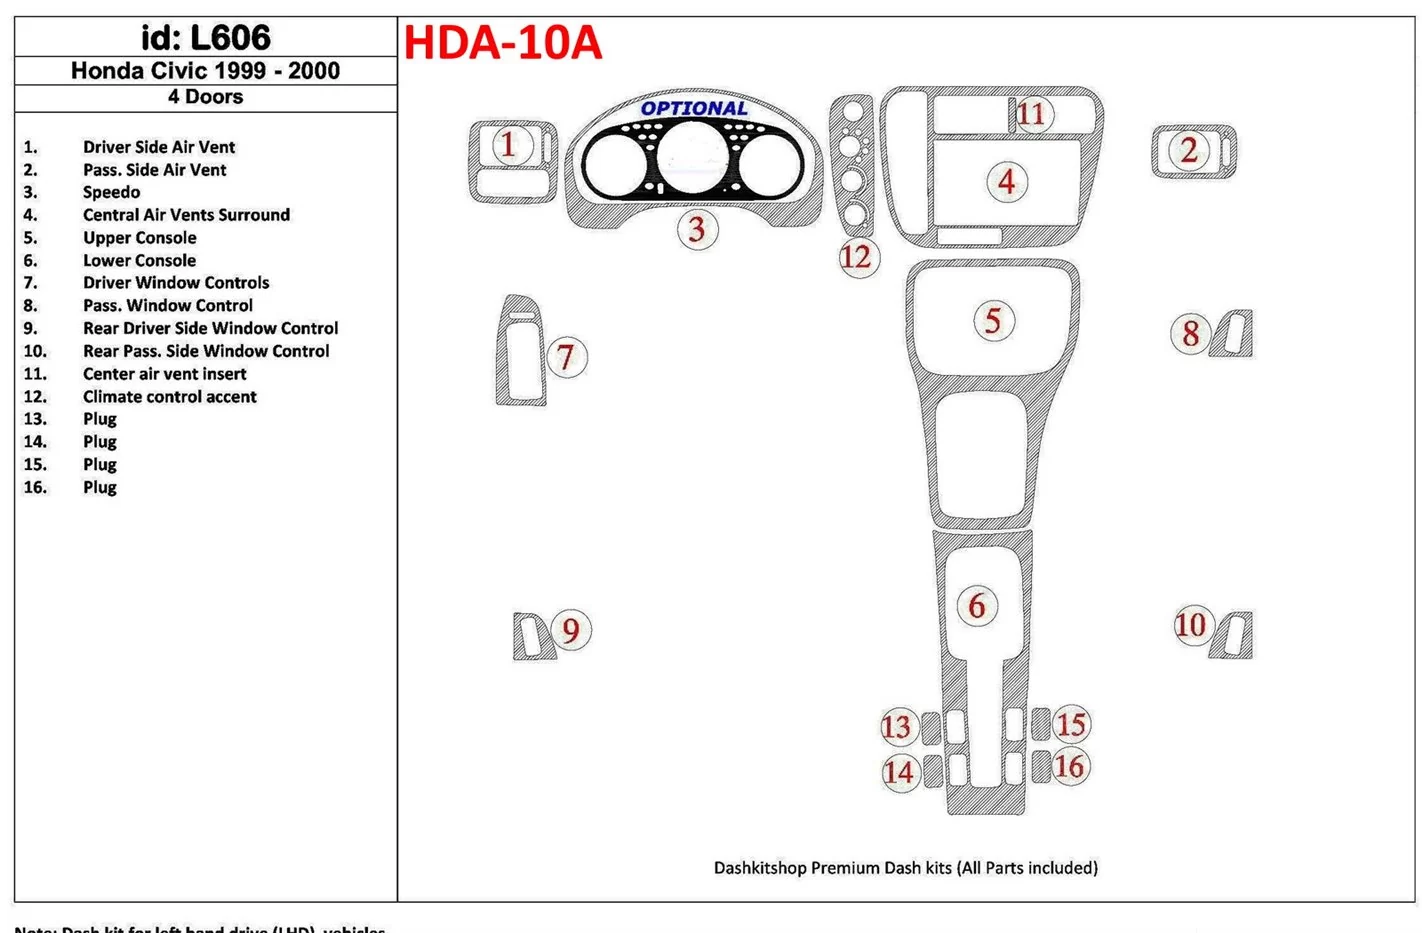 Honda Civic 1999-2000 4 Des portes 16 Parts set BD Kit la décoration du tableau de bord - 1 - habillage decor de tableau de bord